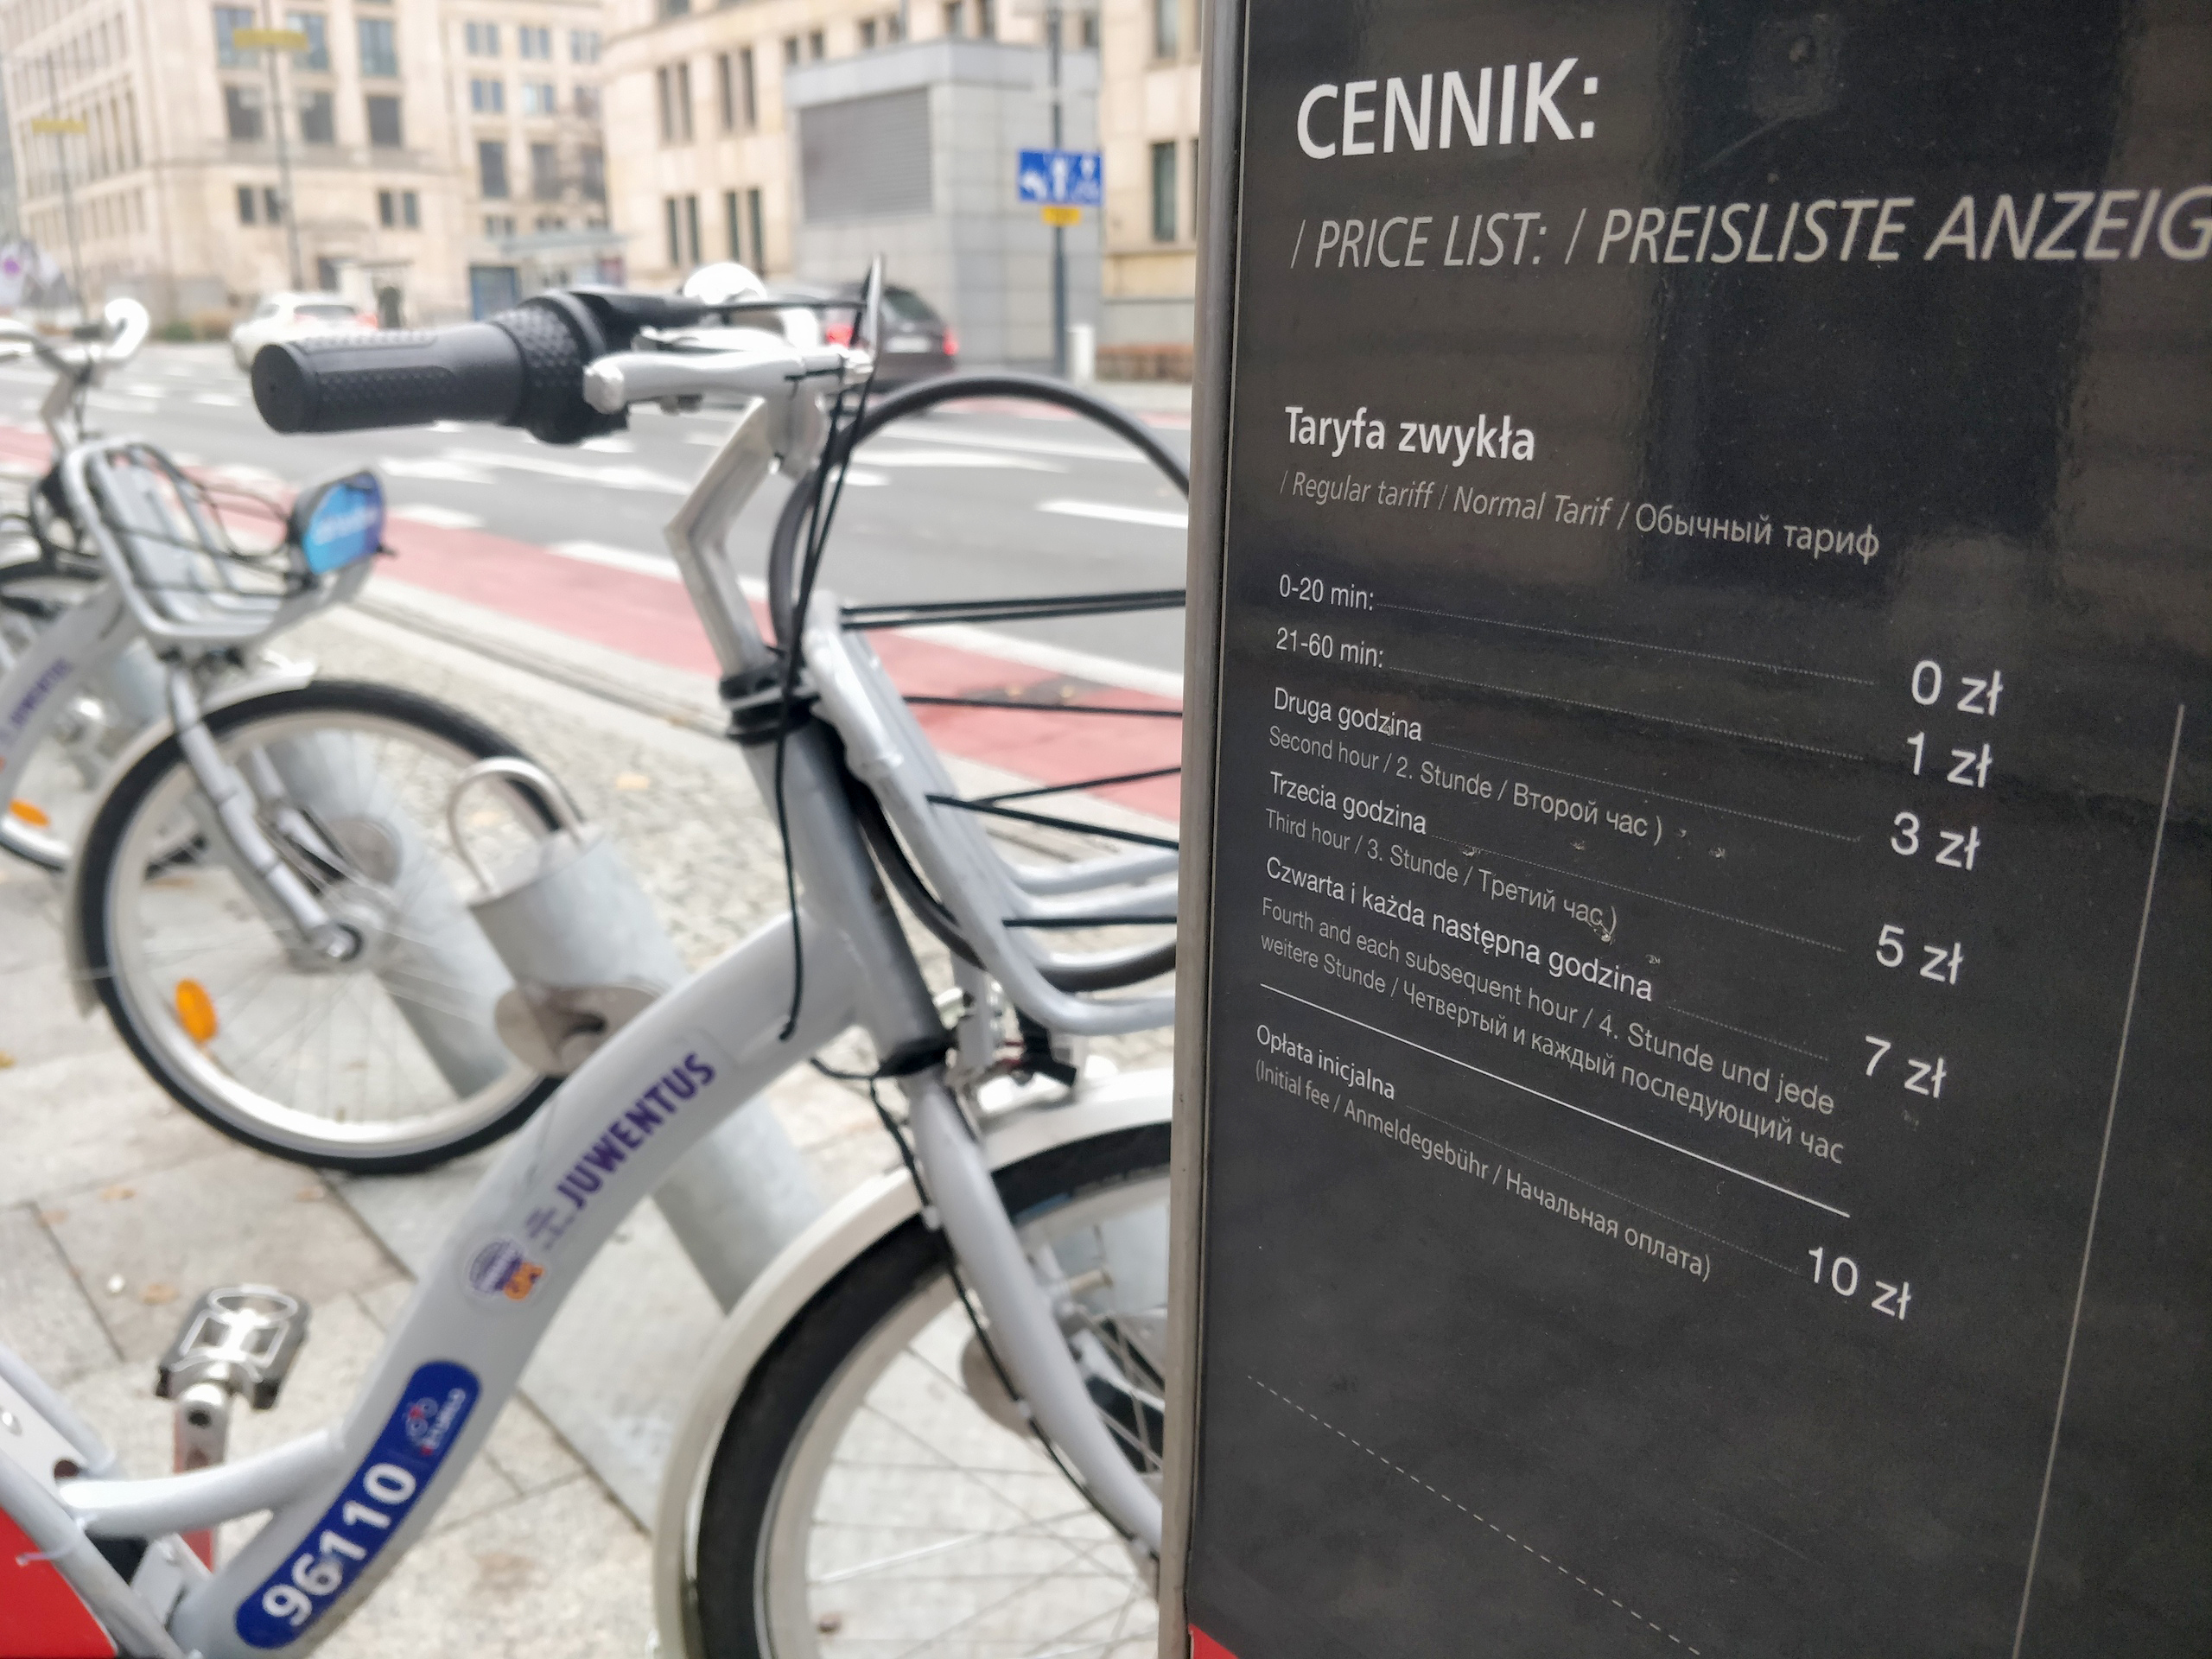 Цены на аренду велосипедов